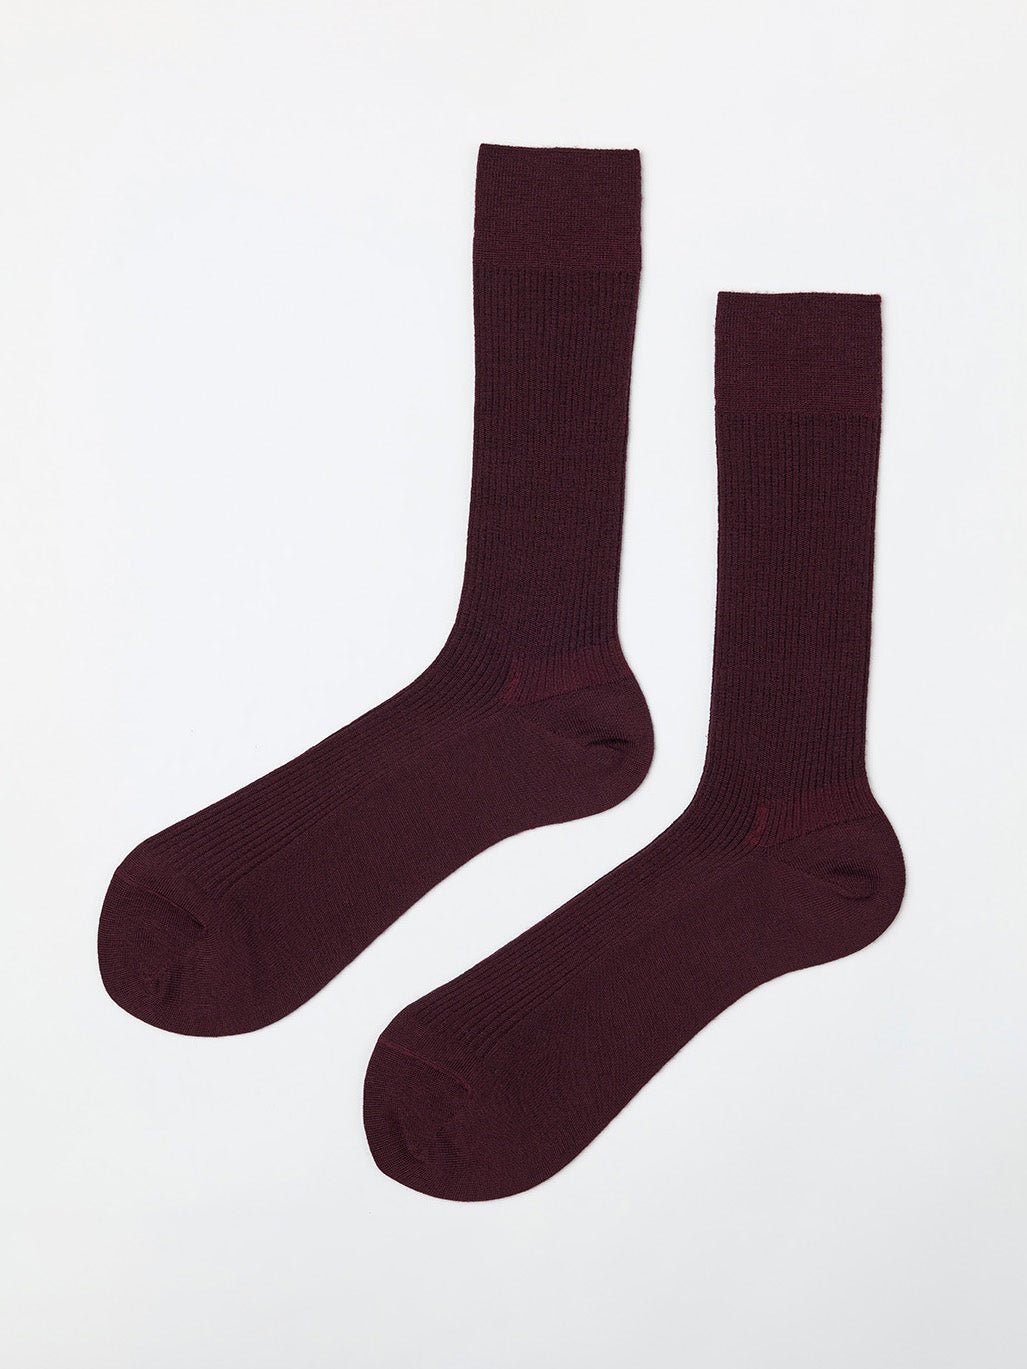 Classy Socks Merino Wool Bordeaux